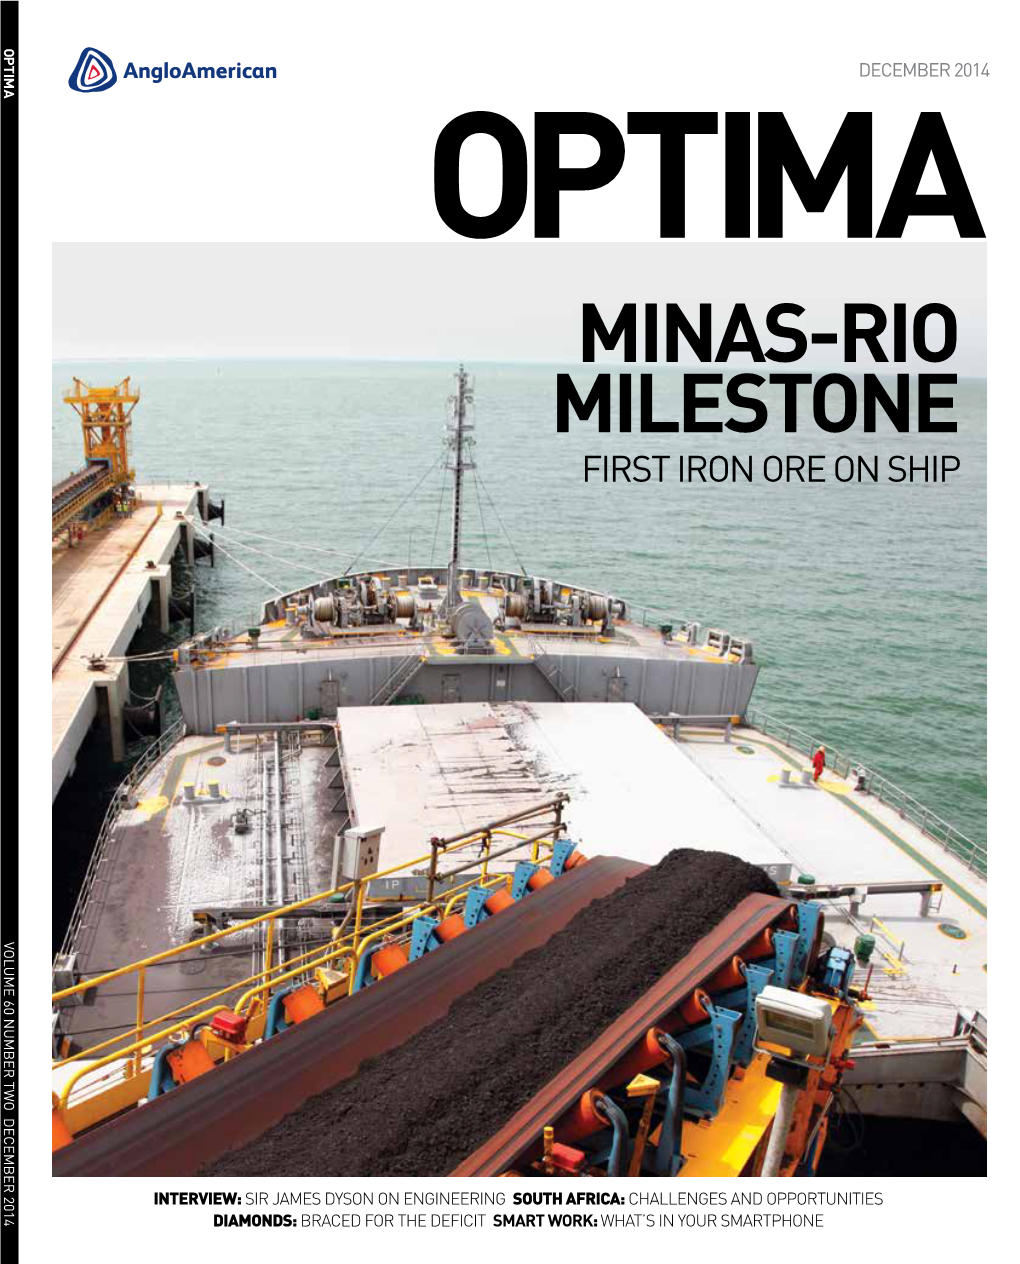 Minas-Rio Milestone